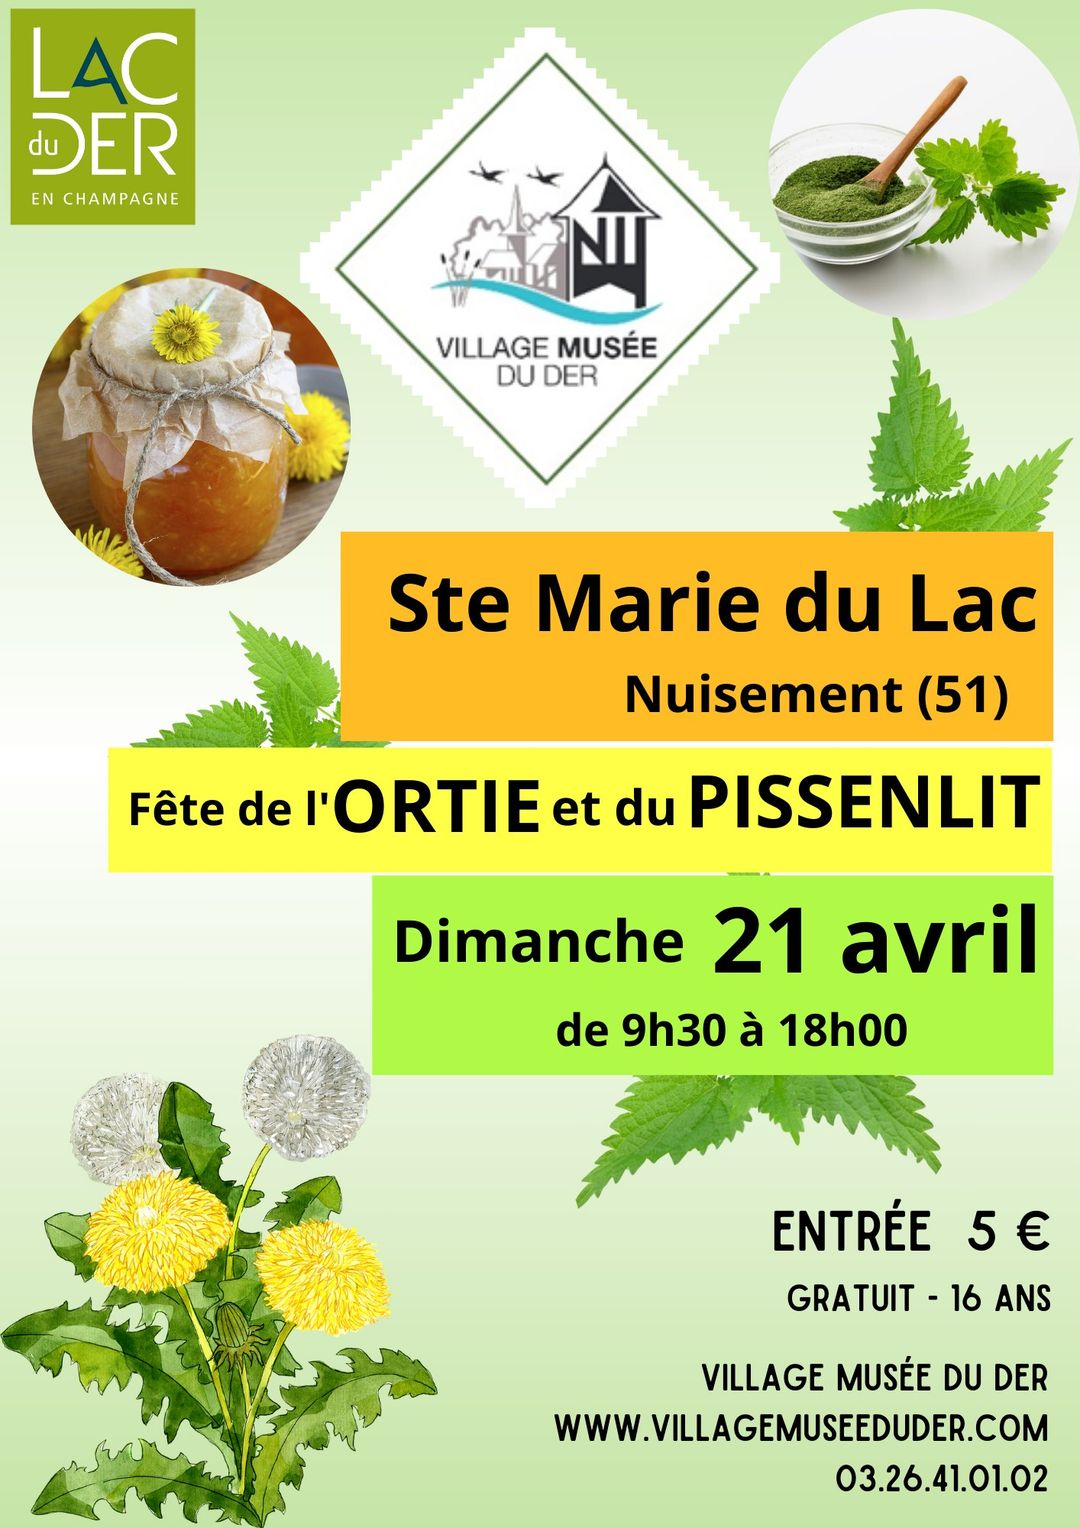 Village musée du Der, le dimanche 21 avril de 9h30 à 18h : Fête de l’Ortie et du Pissenlit